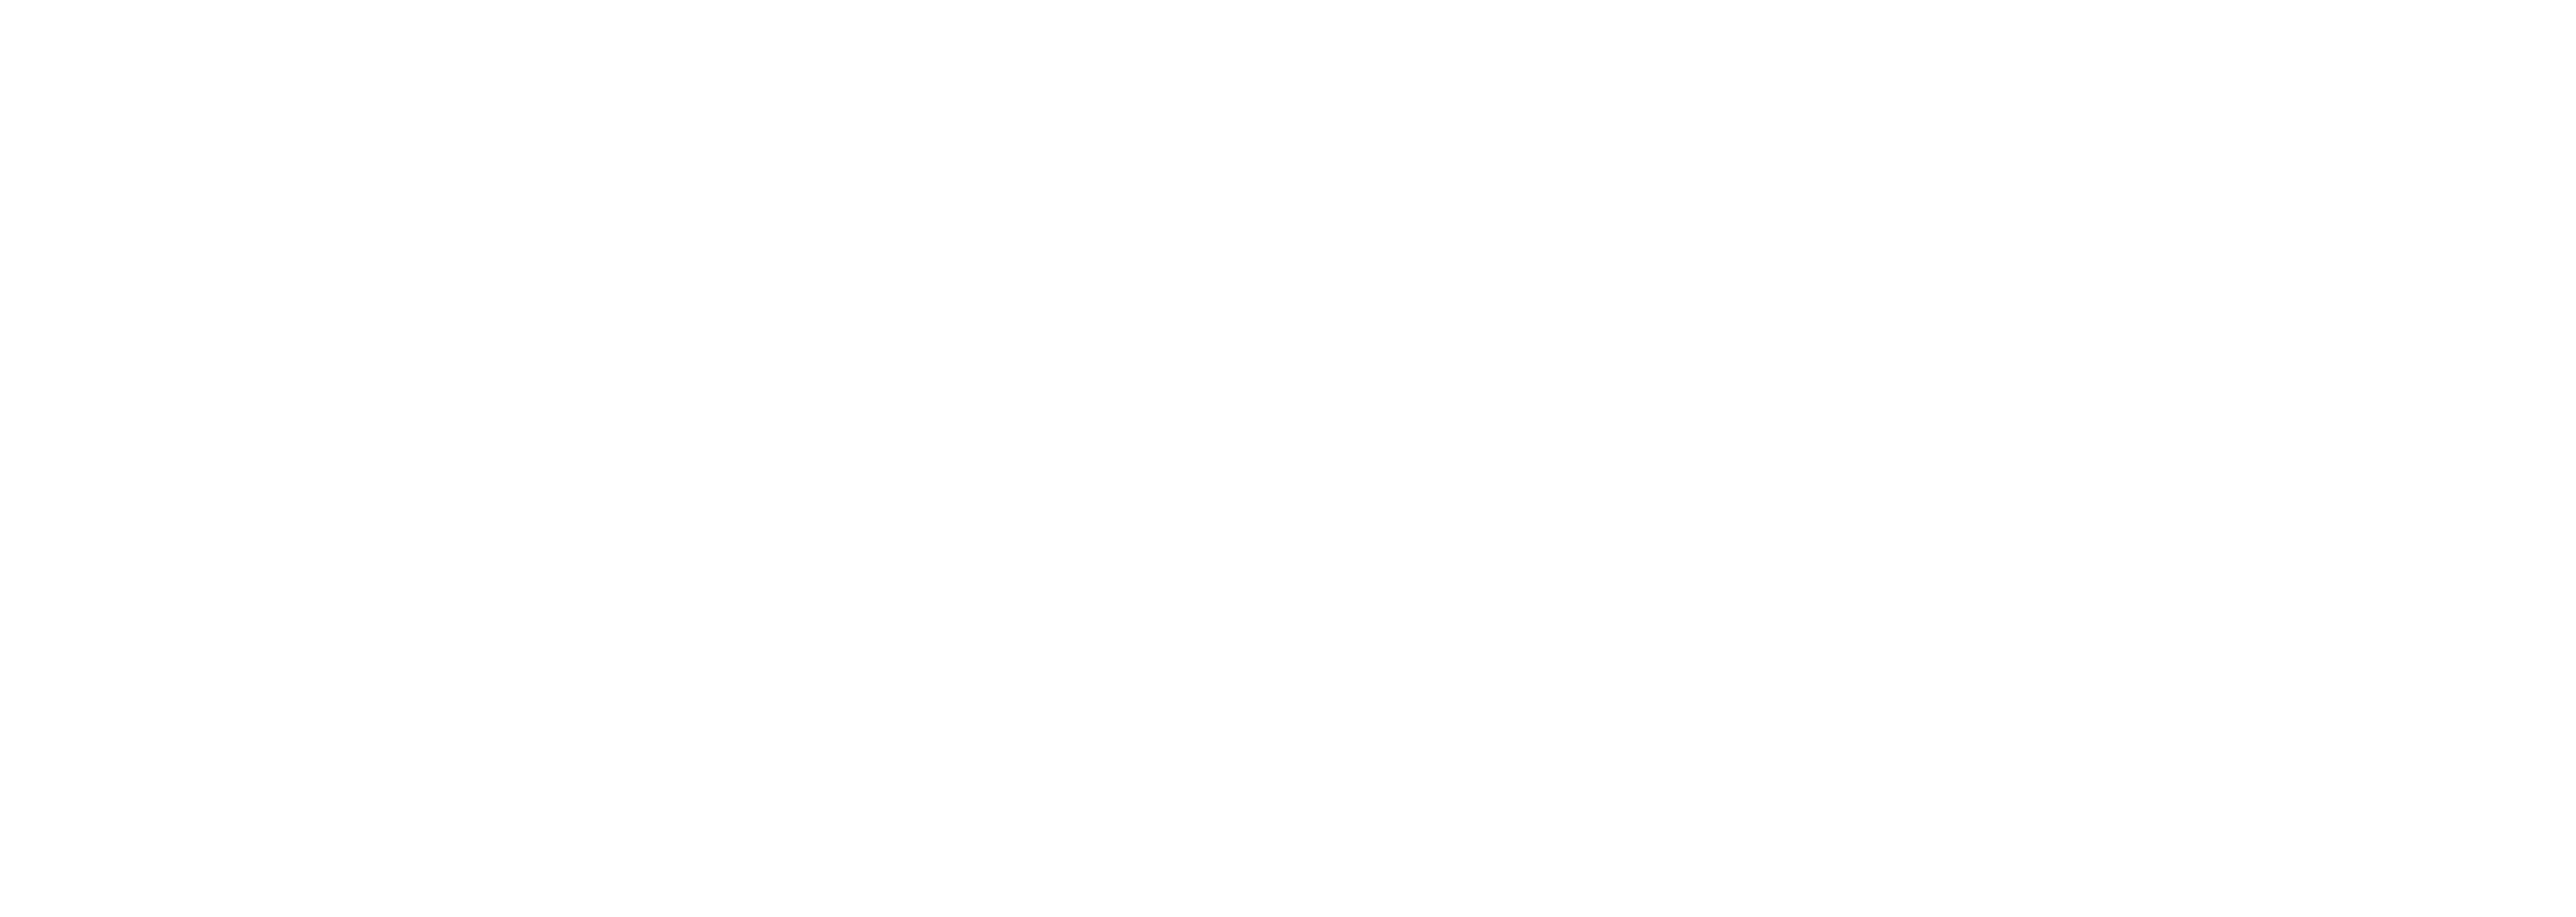 Next Academy Logo - White